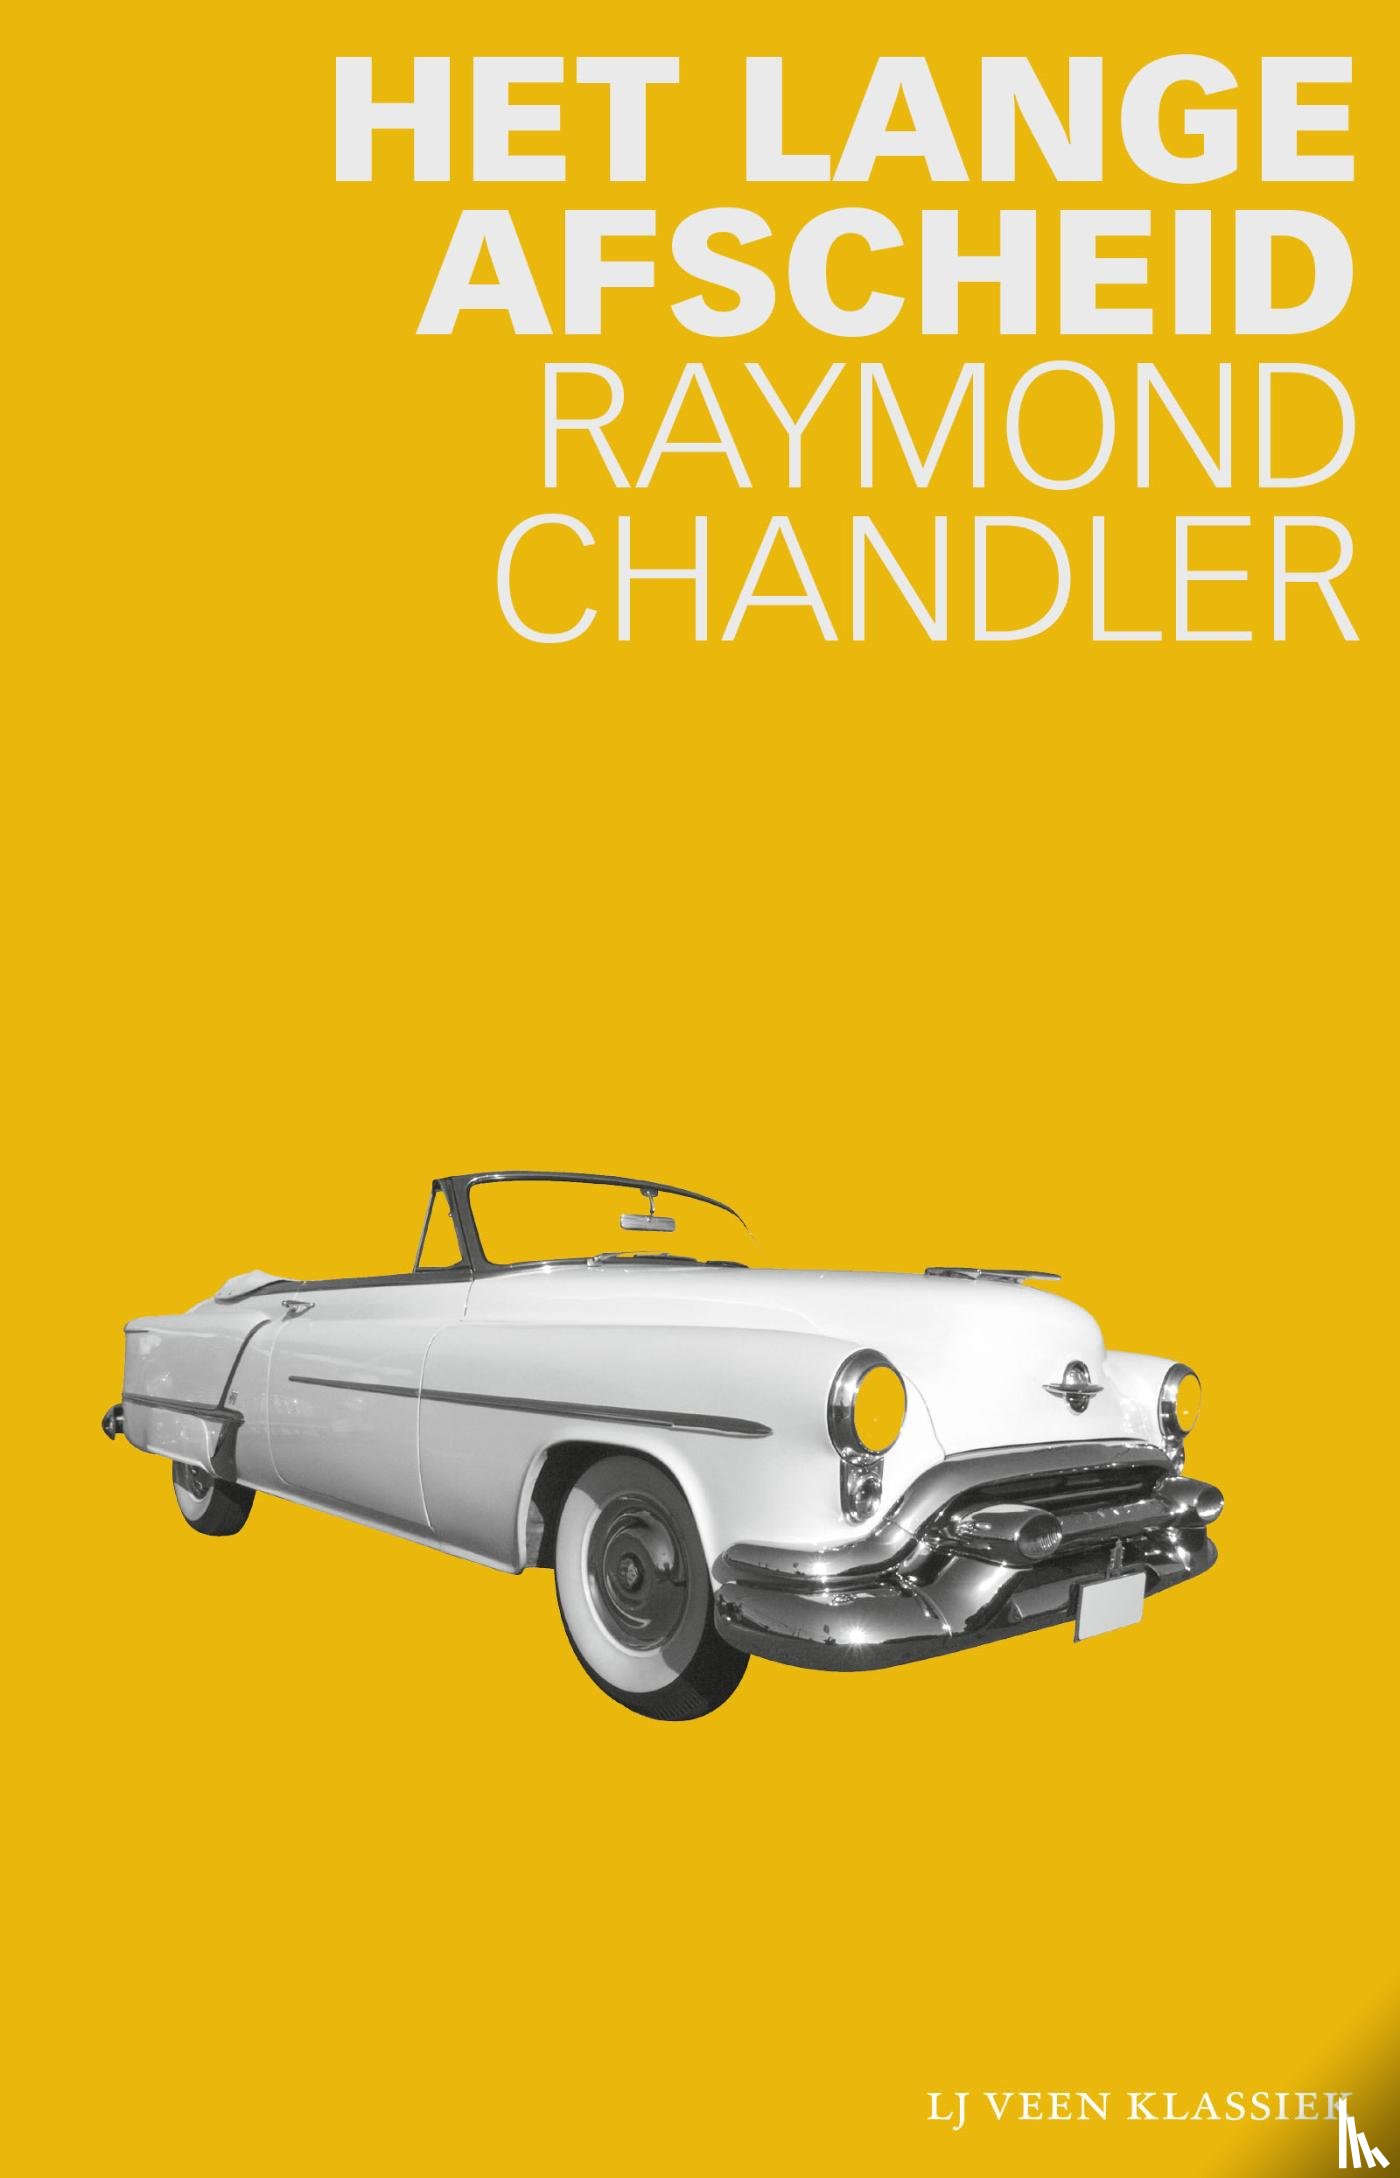 Chandler, Raymond - Het lange afscheid